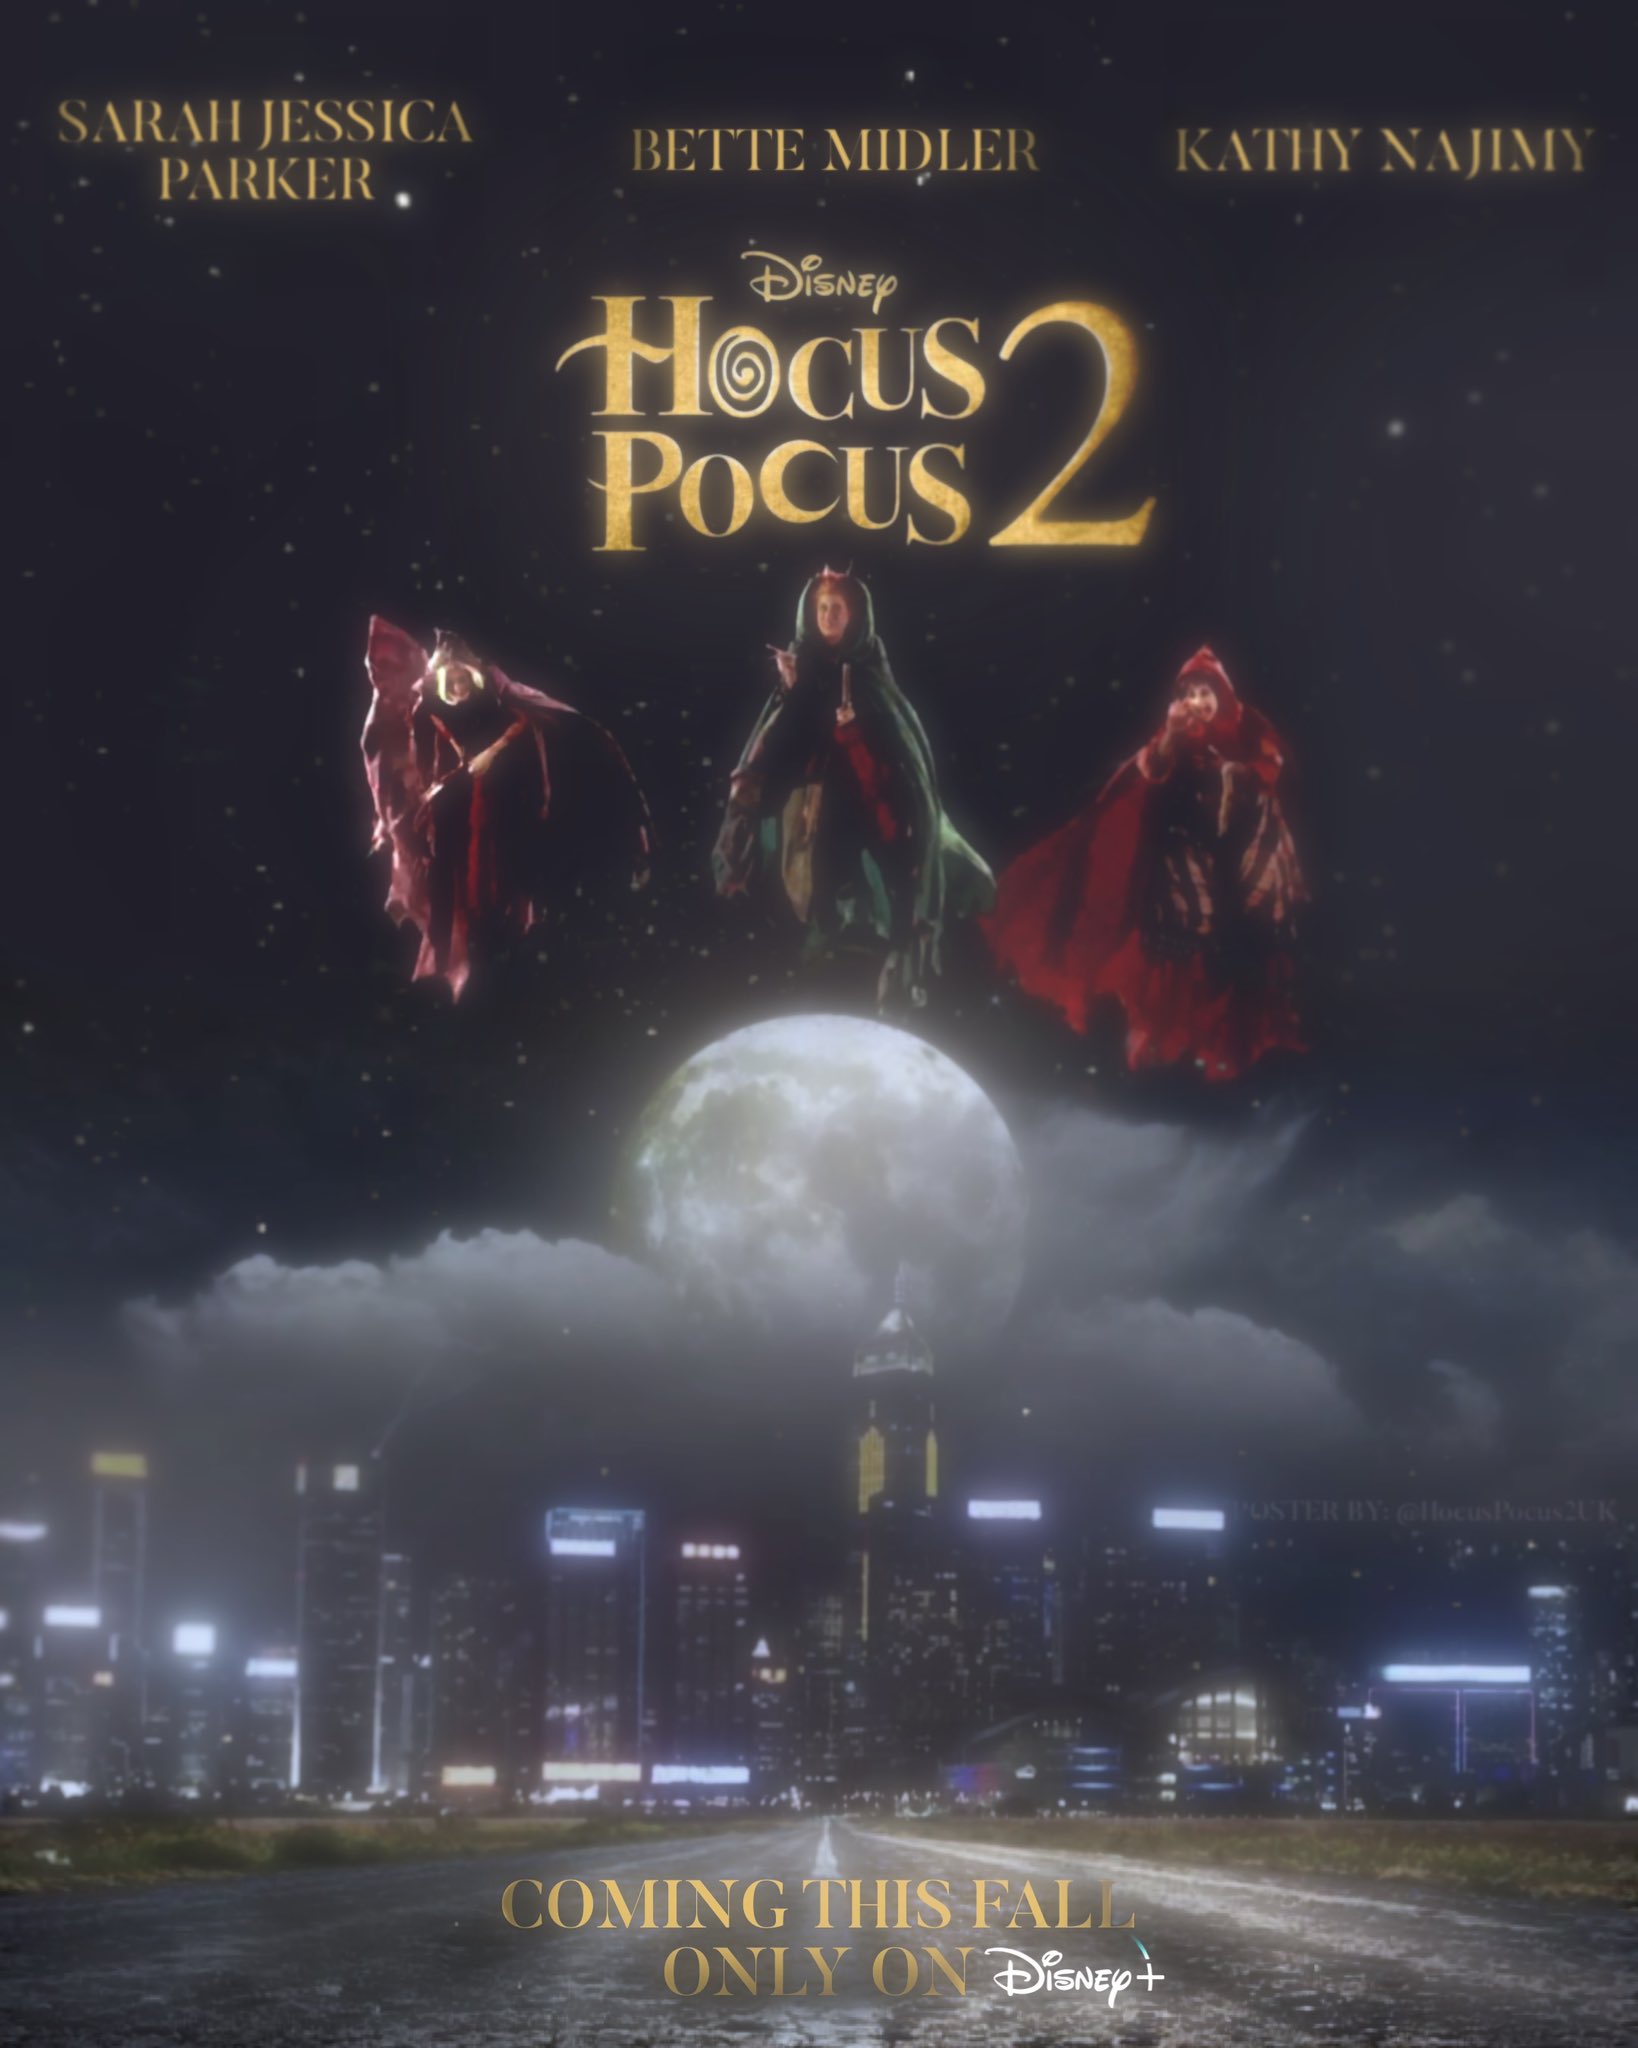 Hocus Pocus 2 made our own 'Hocus Pocus 2' movie poster! ✨